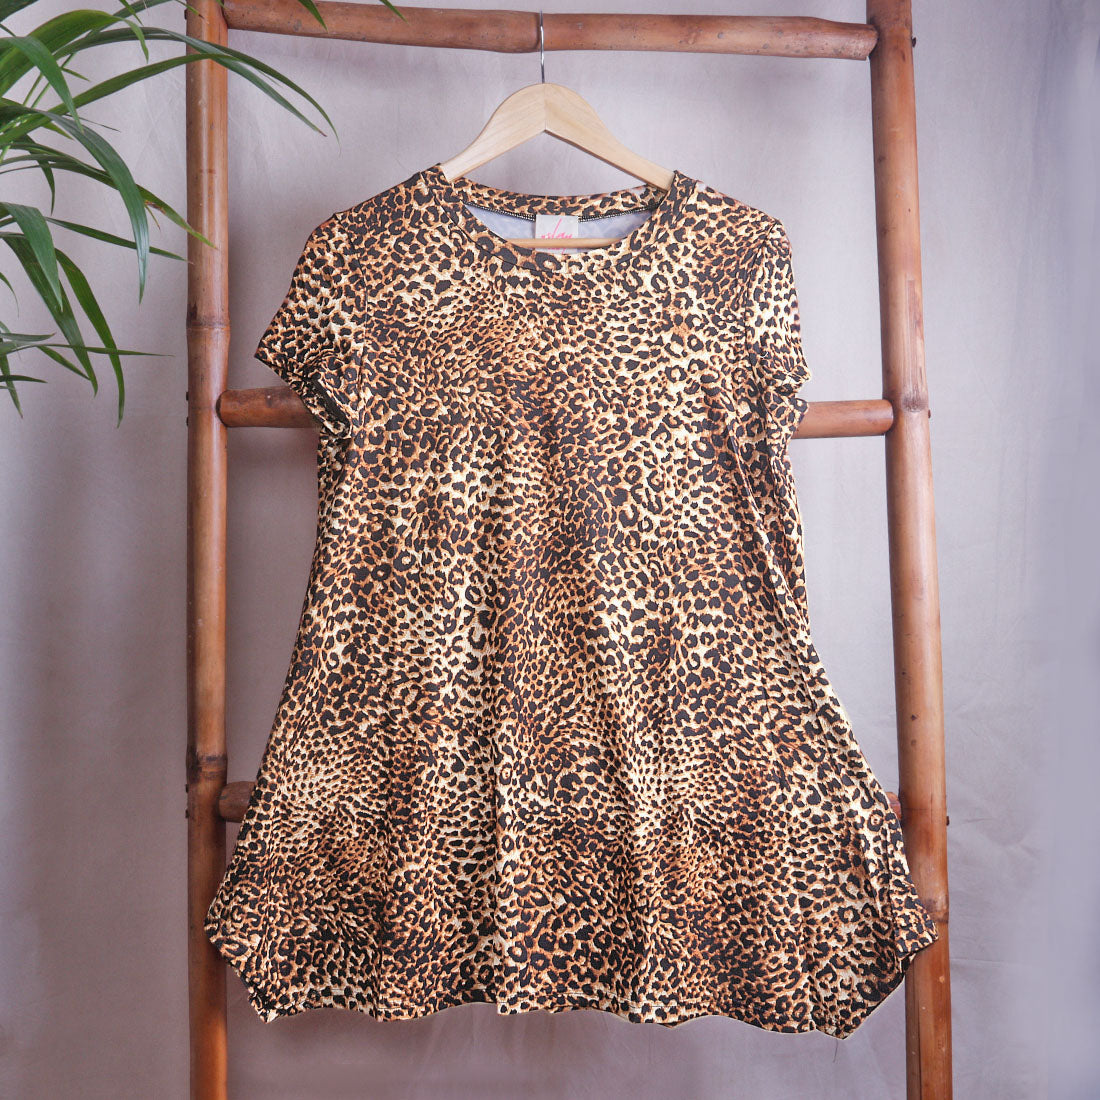 Leopard Printed Tunic Top - Tan